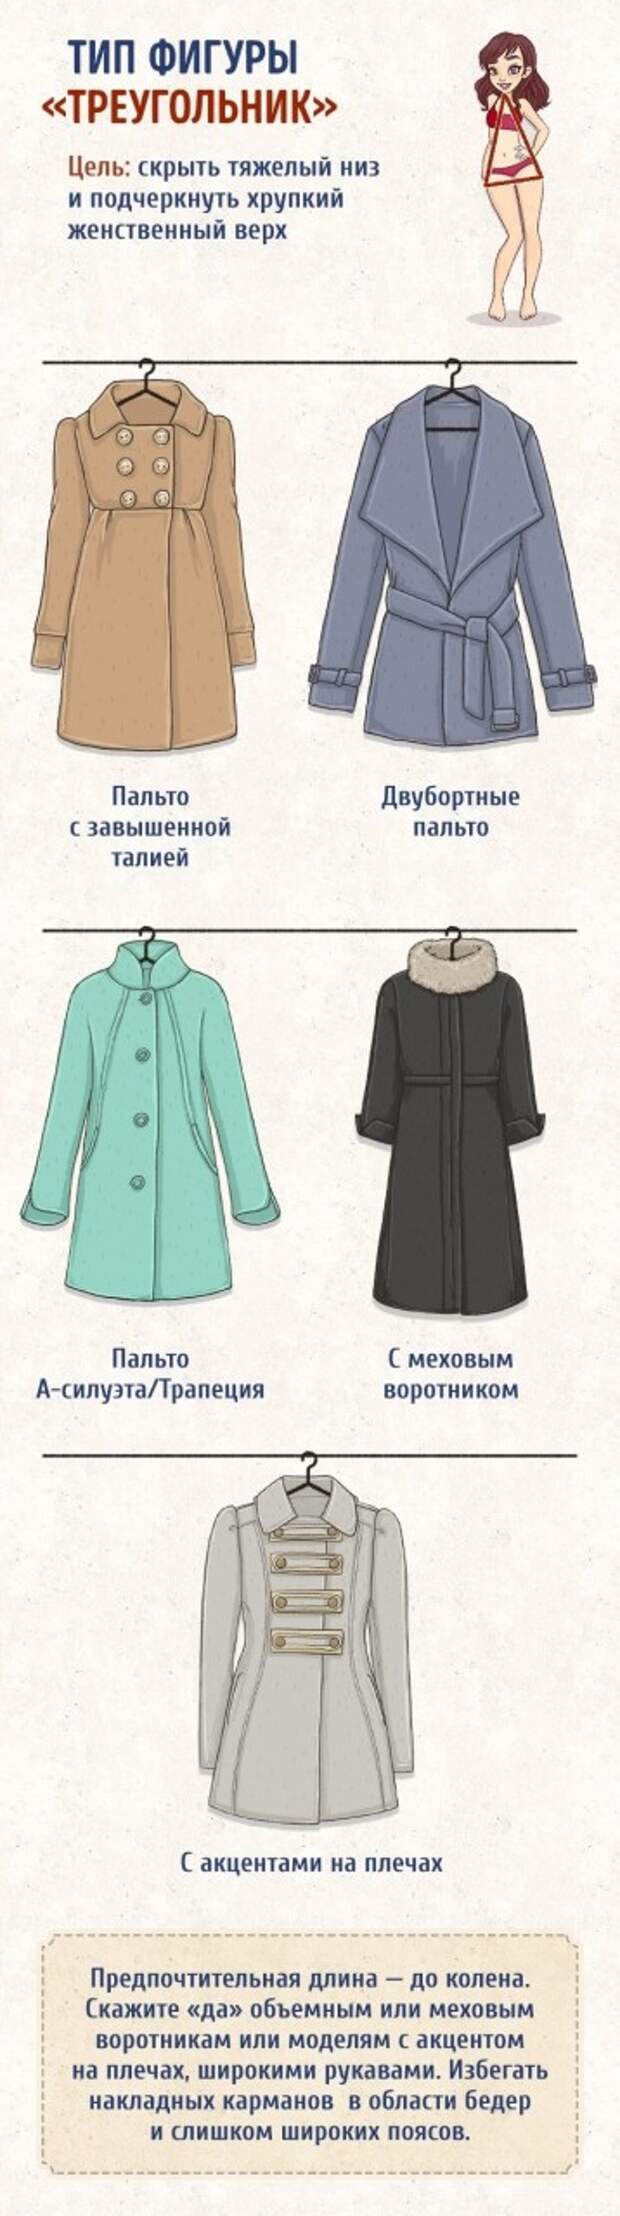 Эта шпаргалка поможет вам выбрать идеальное пальто по типу фигуры